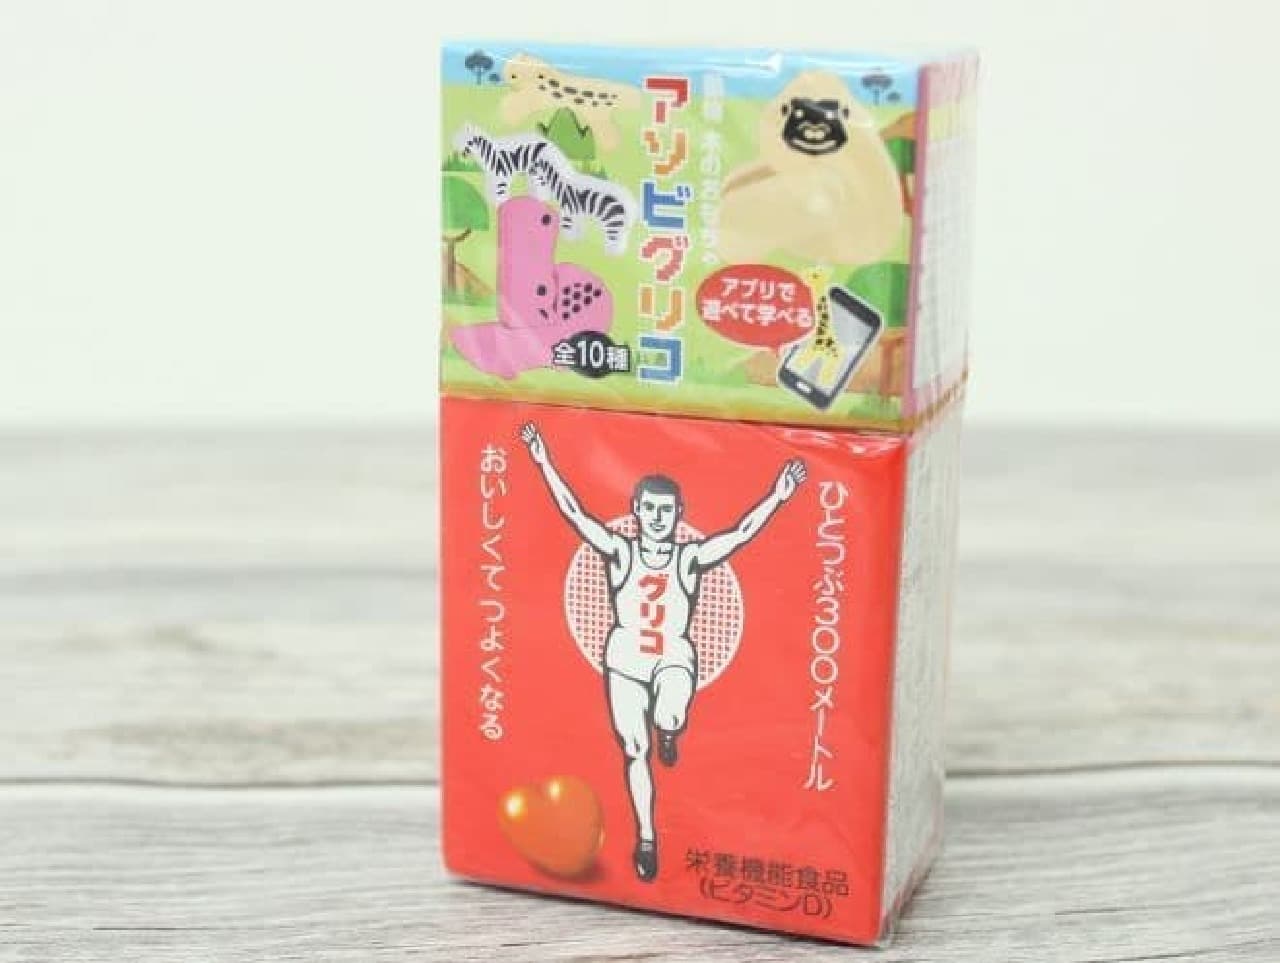 江崎グリコから販売されているキャラメル菓子「グリコ」